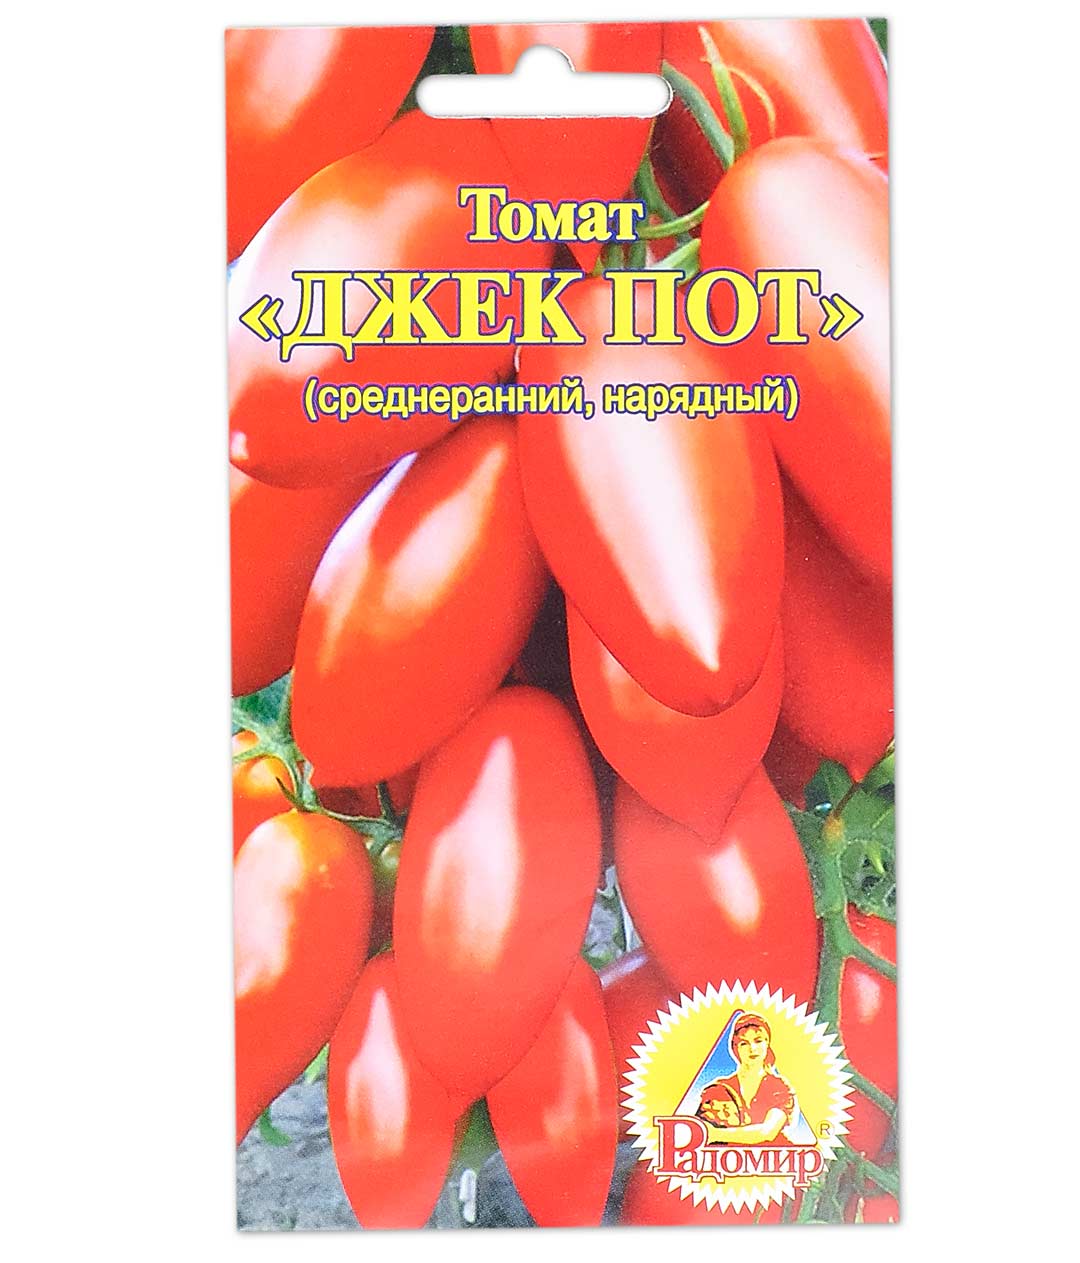 купить семена томата джекпот в минске